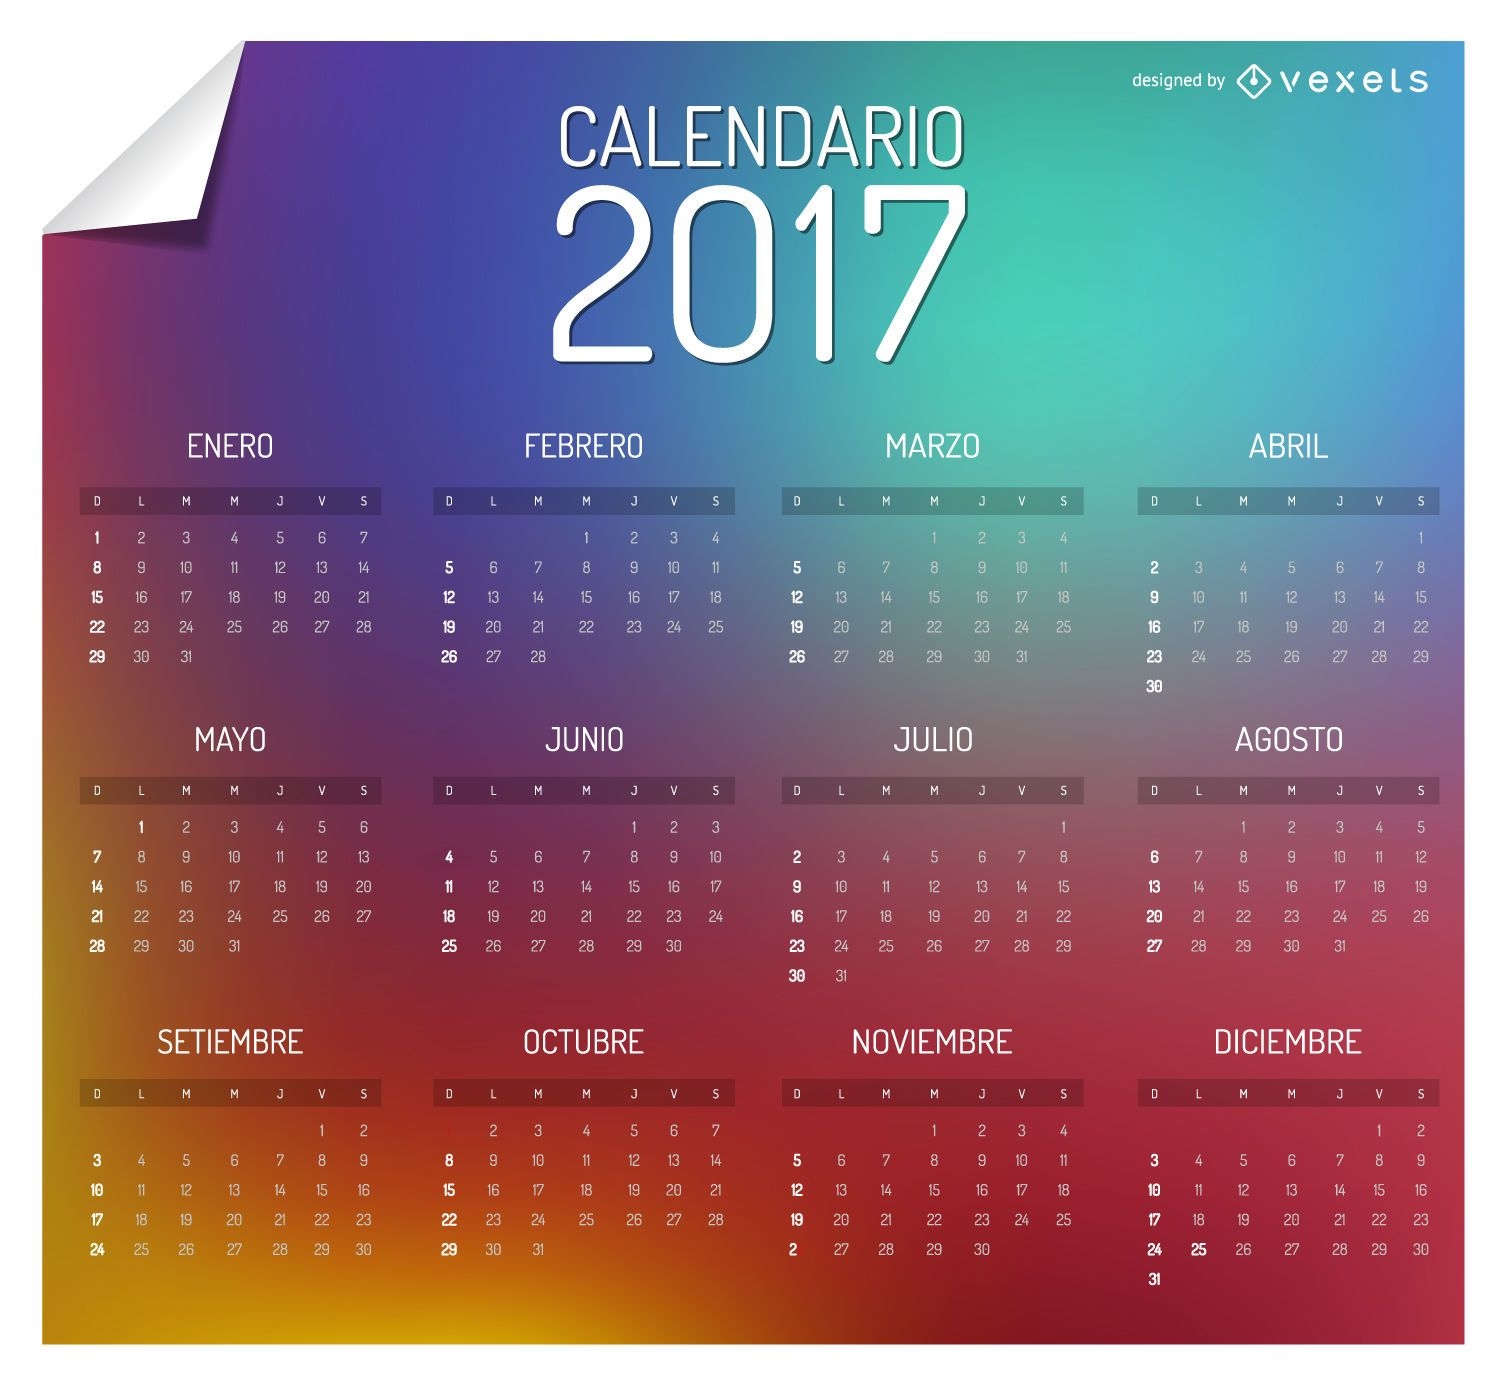 Calend?rio de 2017 colorido em espanhol